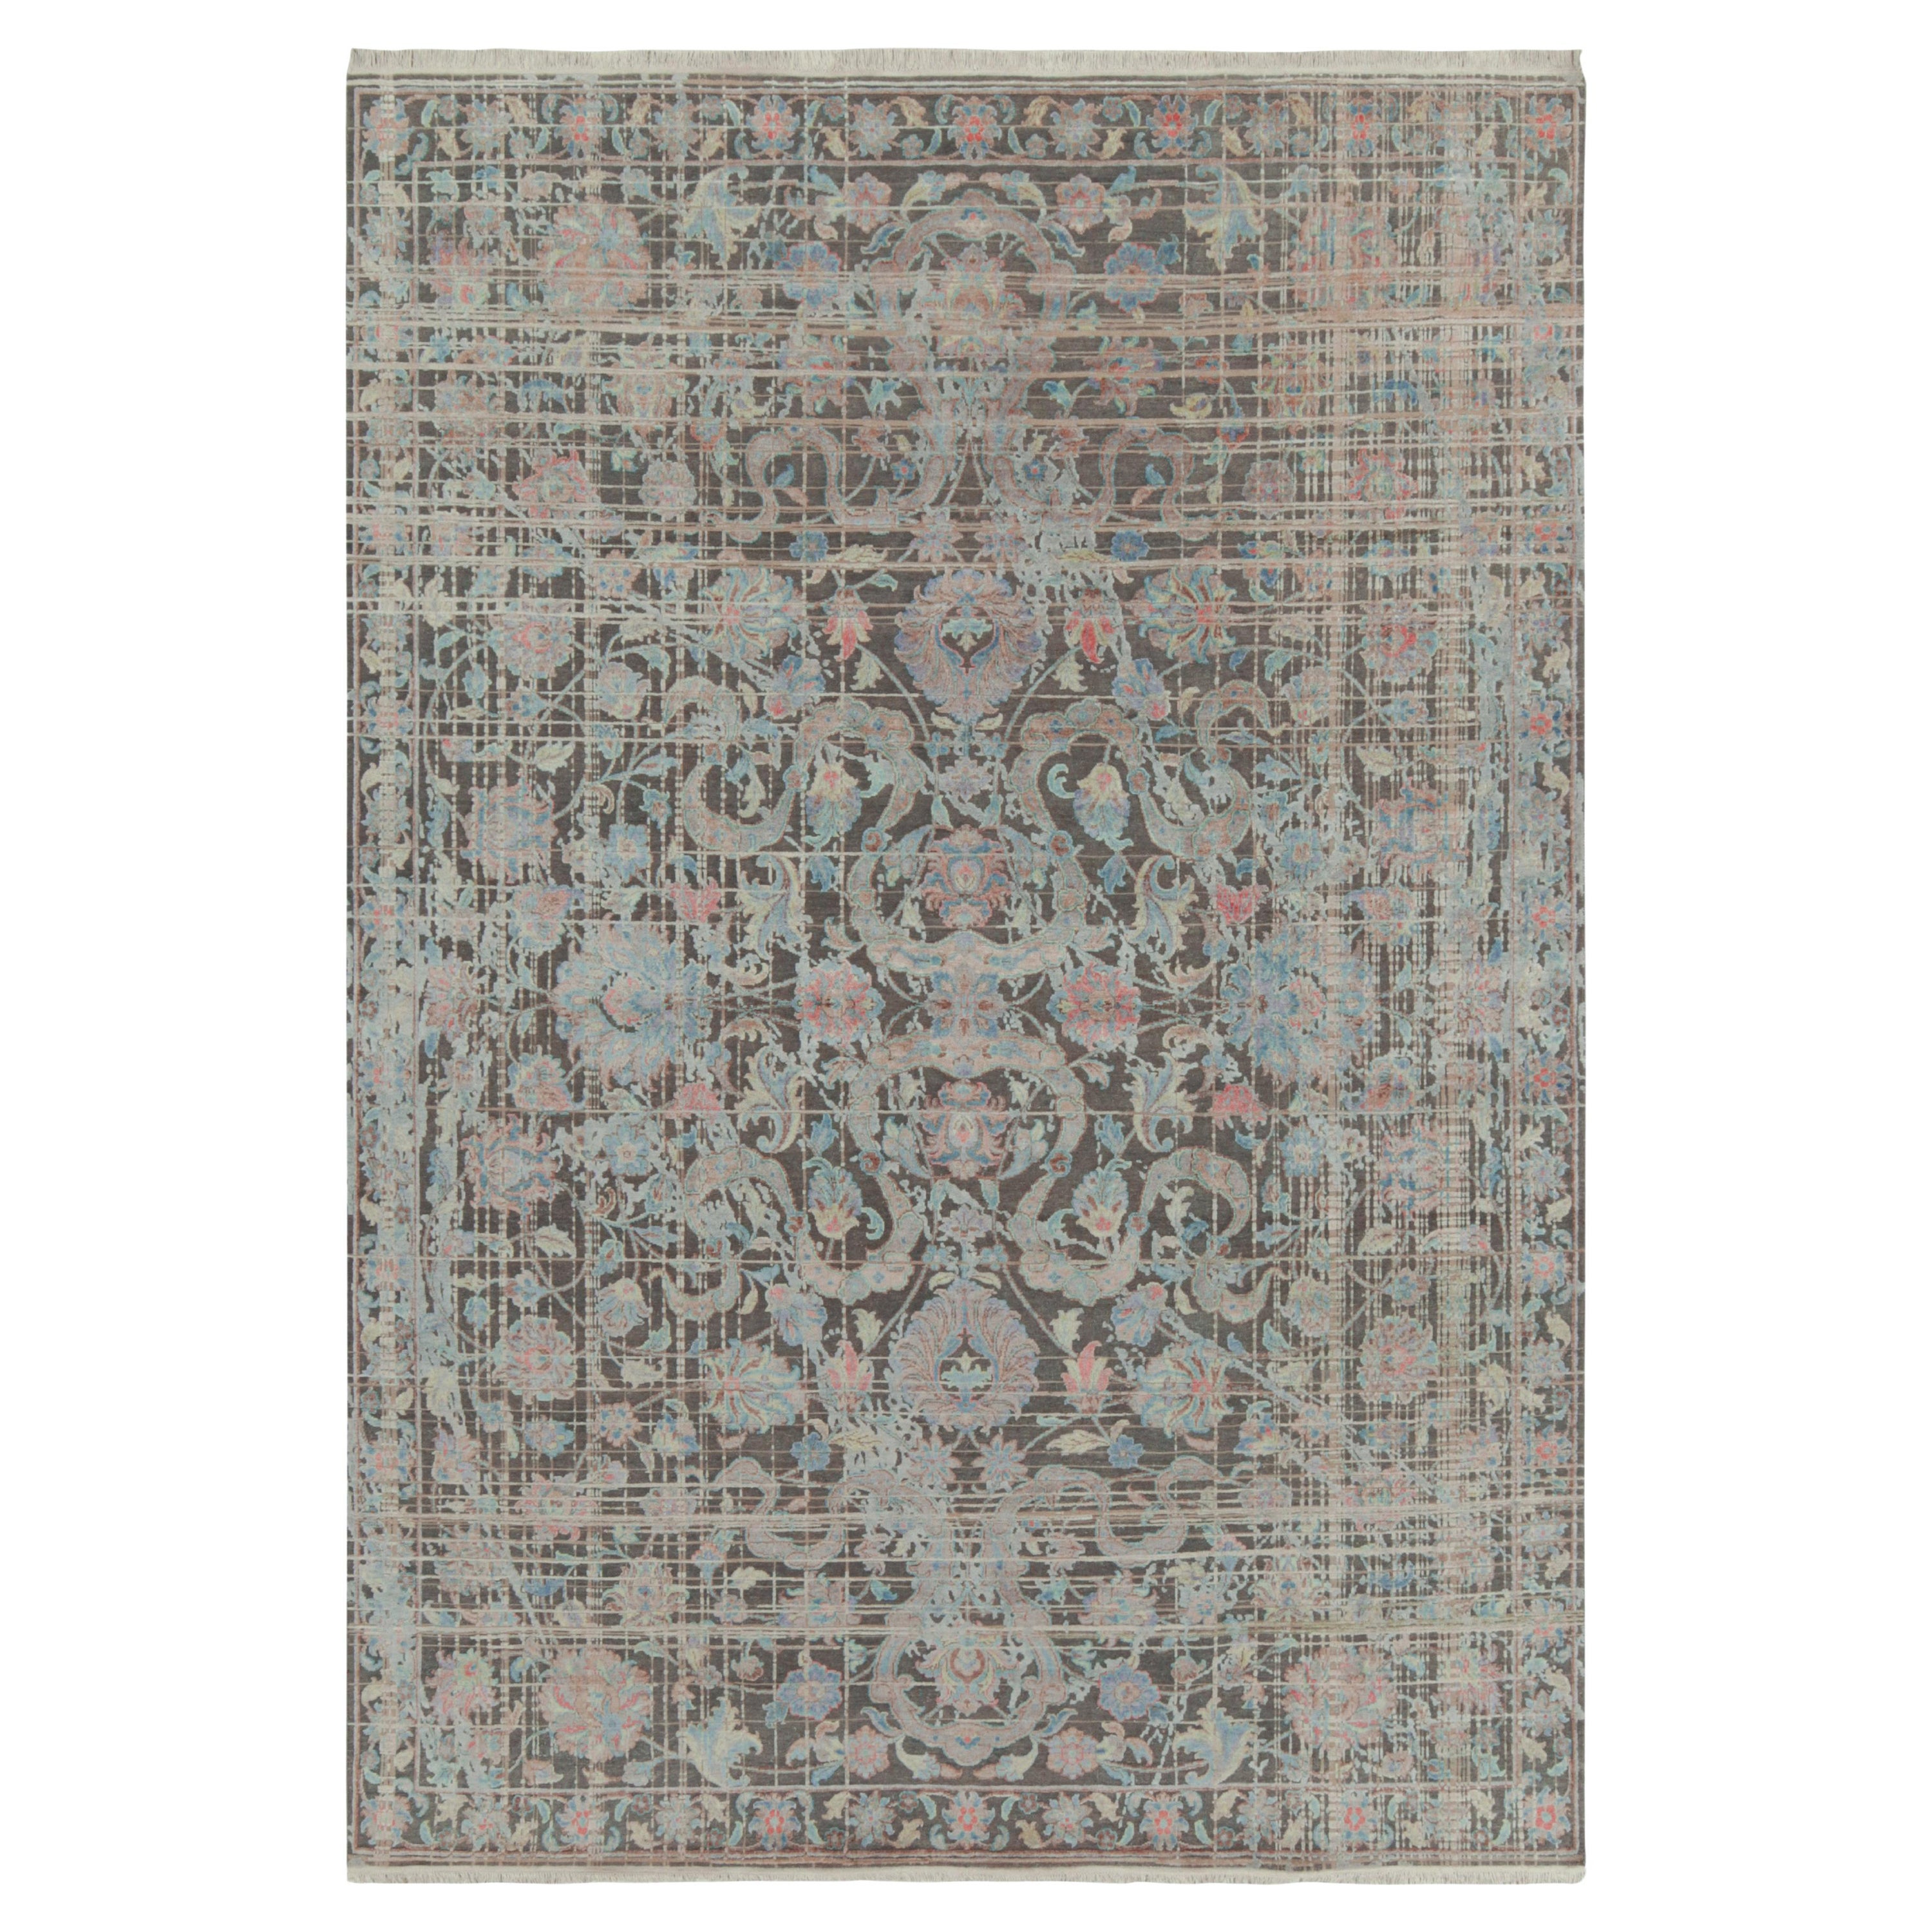 Rug & Kilim's Persian Style Modern Rug in Grau mit polychromen Blumenmustern